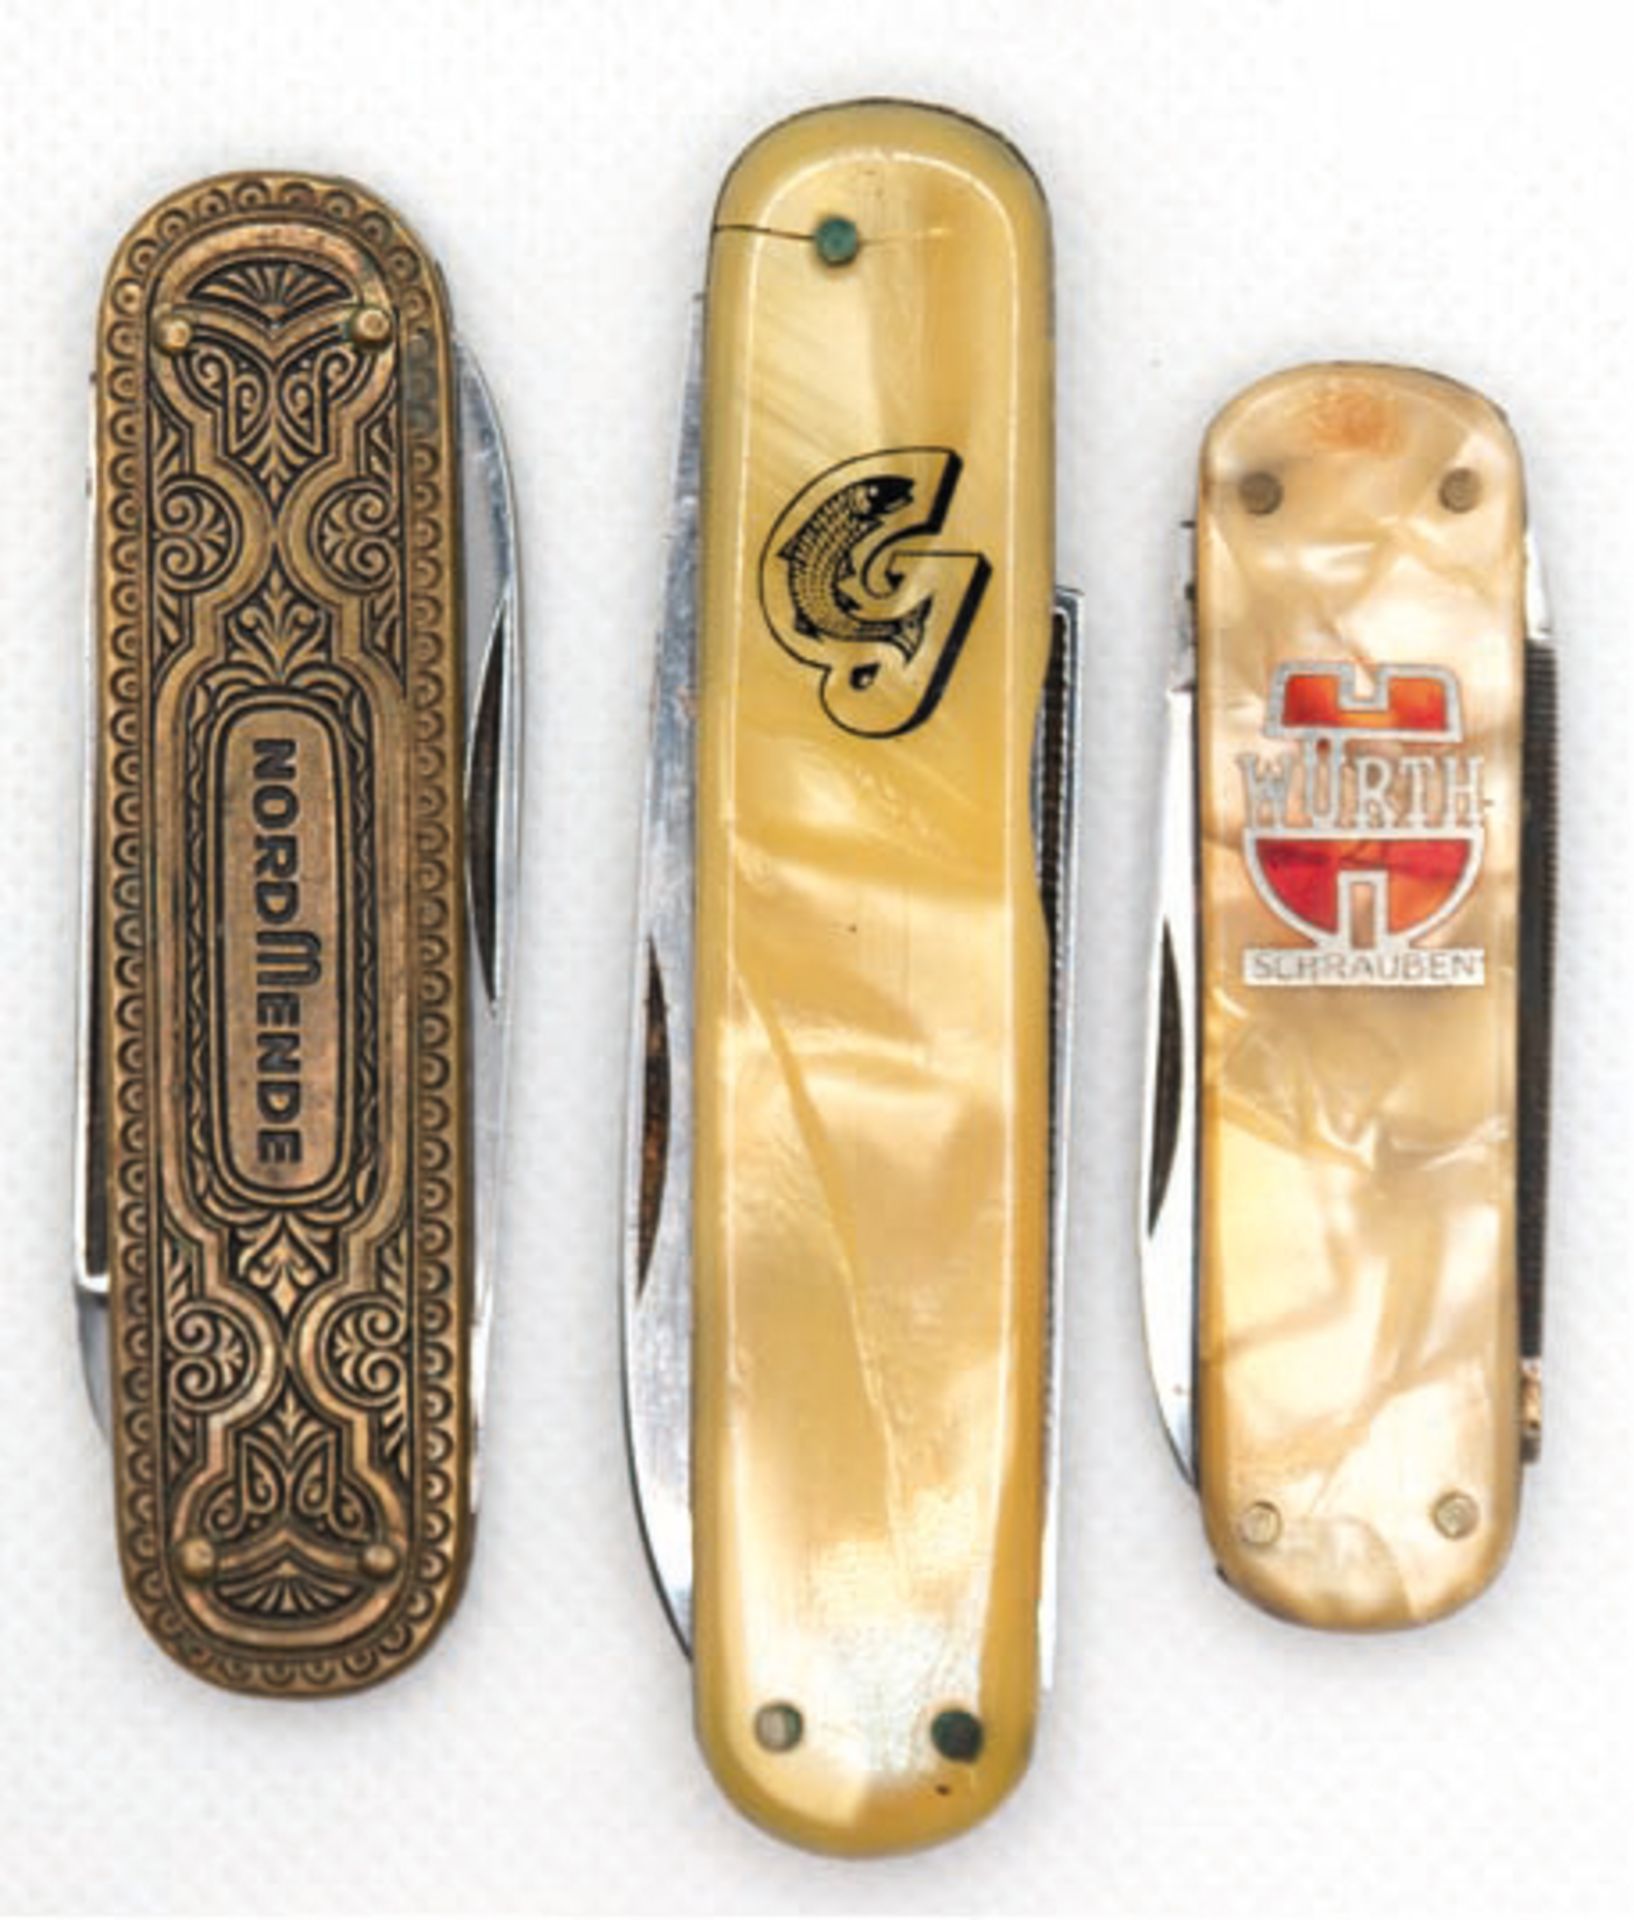 Konvolut von 3 Werbe-Taschenmessern, dabei "Nordmende", "Würth Schrauben" und mit Fisch, L. 5,7 cm 